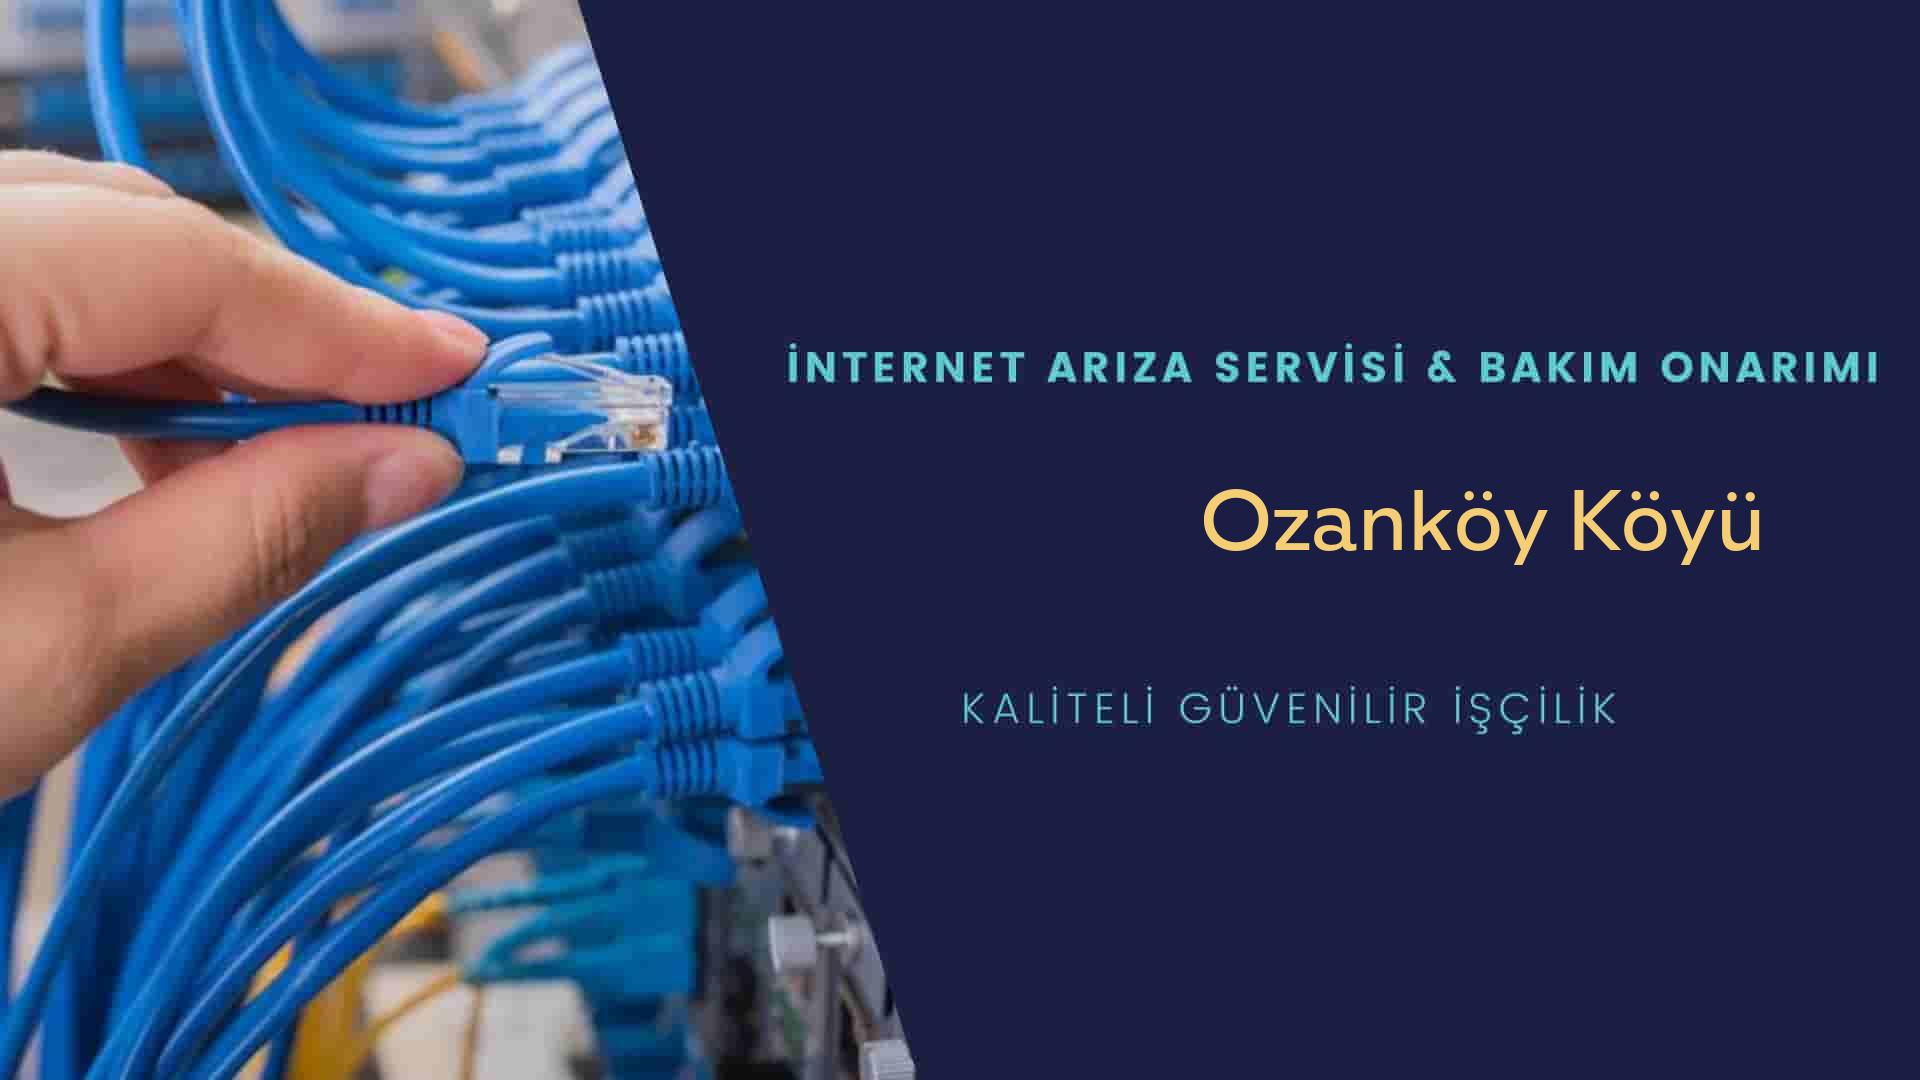 Ozanköy Köyü internet kablosu çekimi yapan yerler veya elektrikçiler mi? arıyorsunuz doğru yerdesiniz o zaman sizlere 7/24 yardımcı olacak profesyonel ustalarımız bir telefon kadar yakındır size.